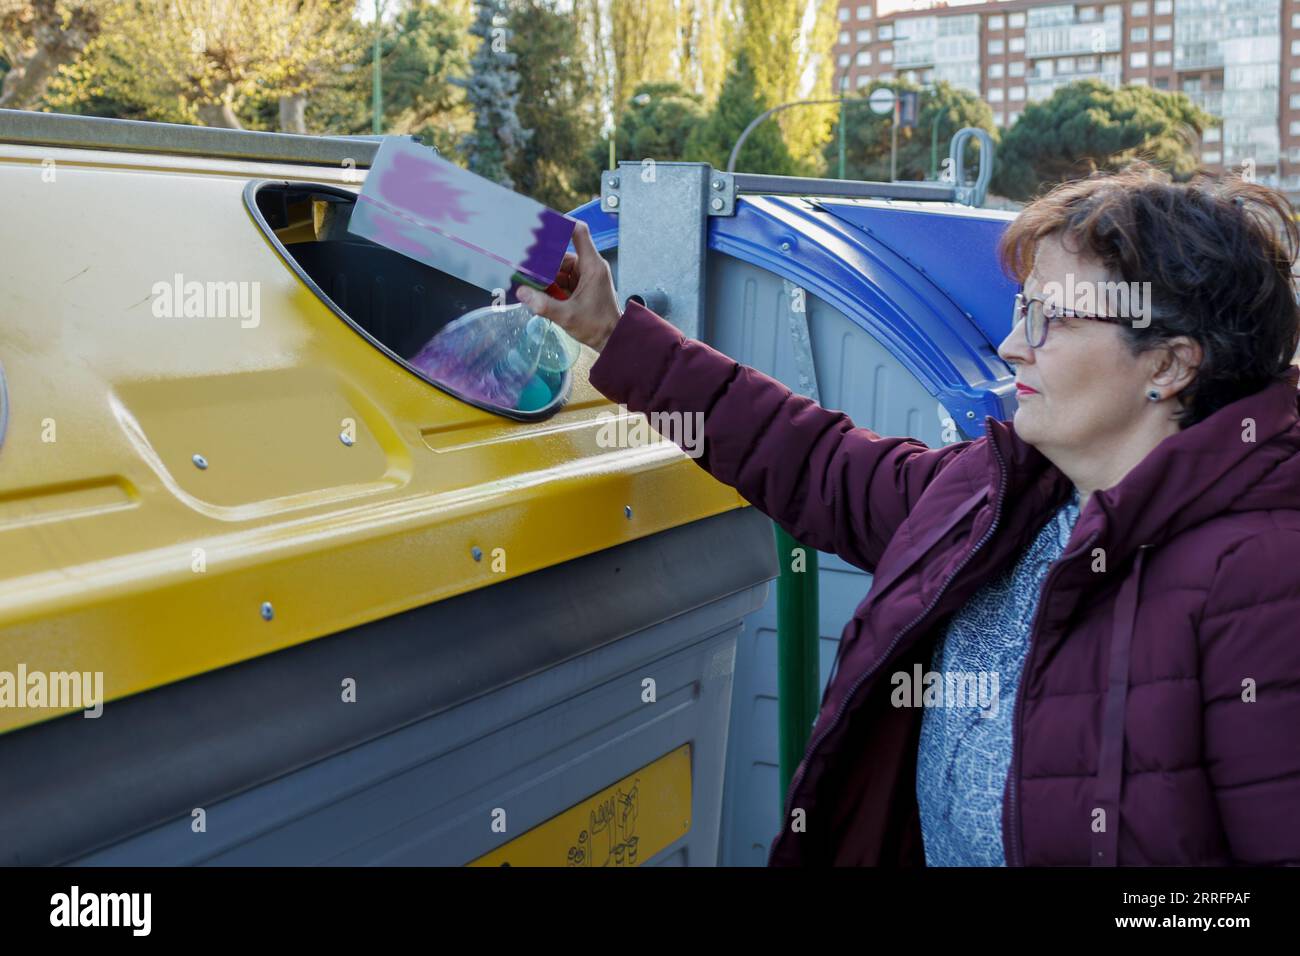 donna che getta plastica in un contenitore giallo specifico per il riciclaggio e la tutela dell'ambiente Foto Stock